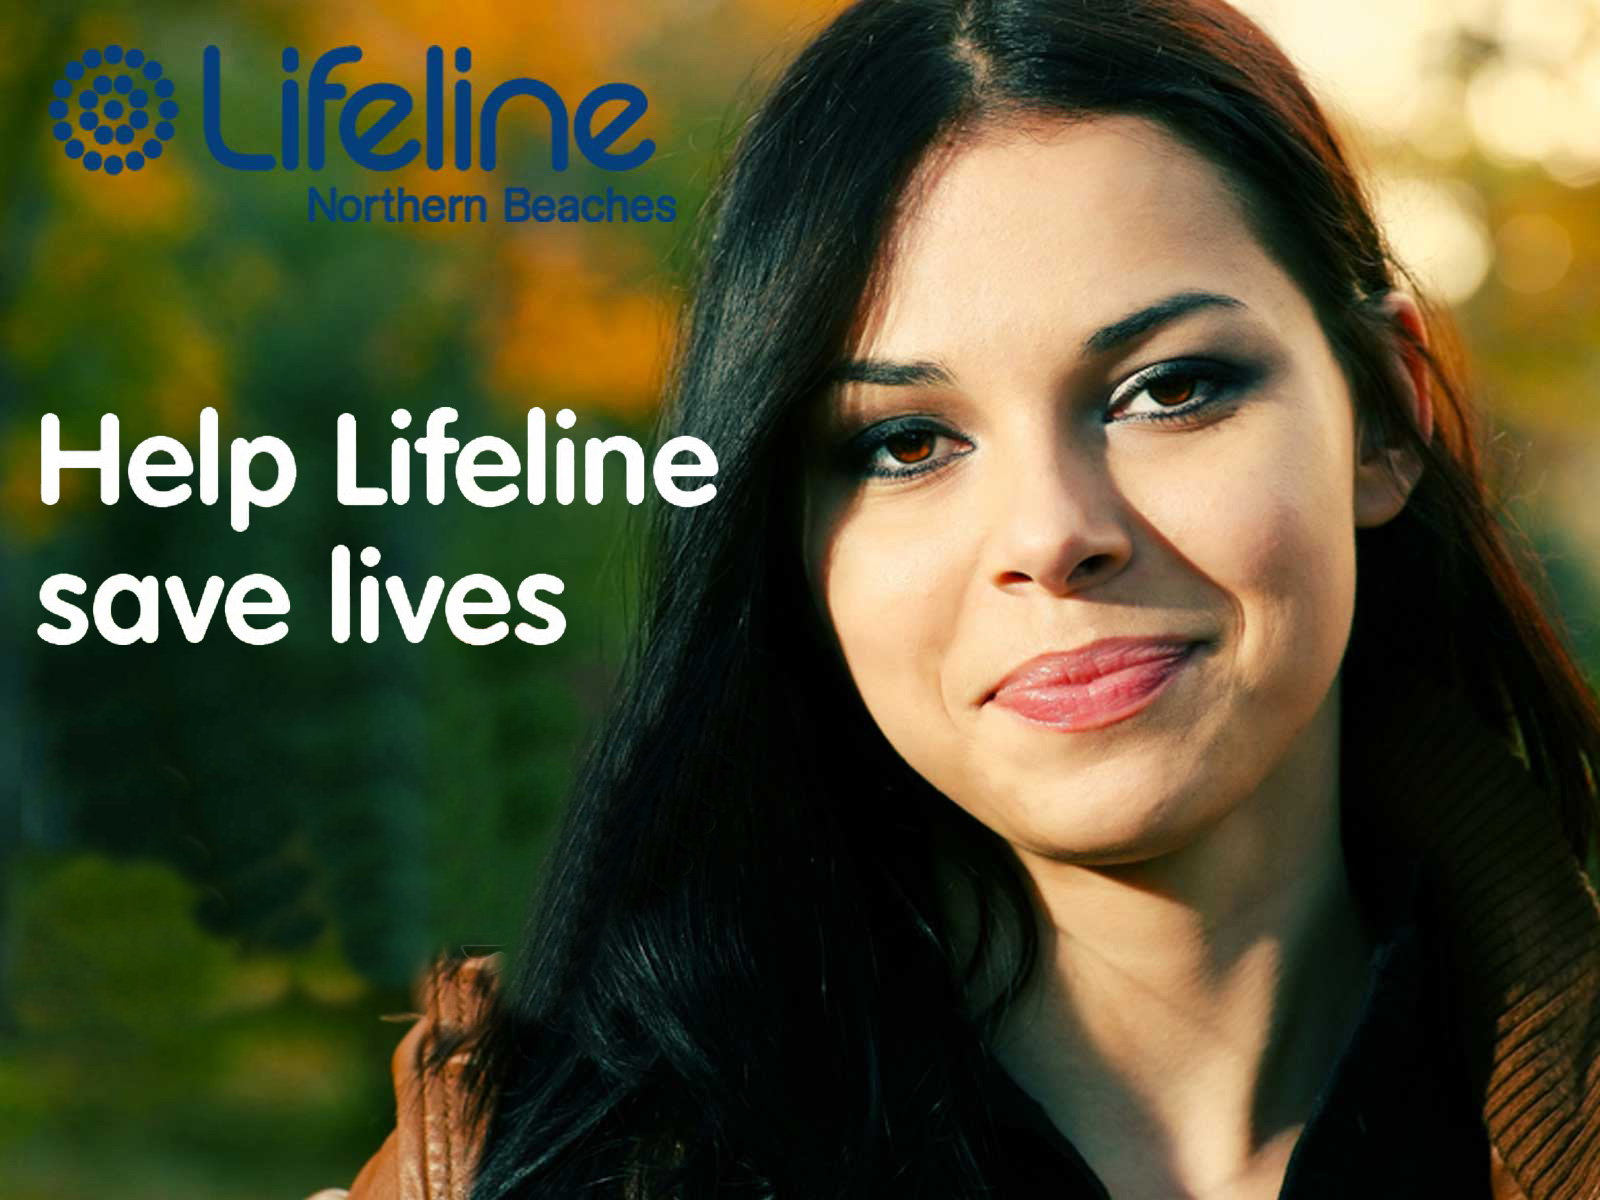 lifeline2